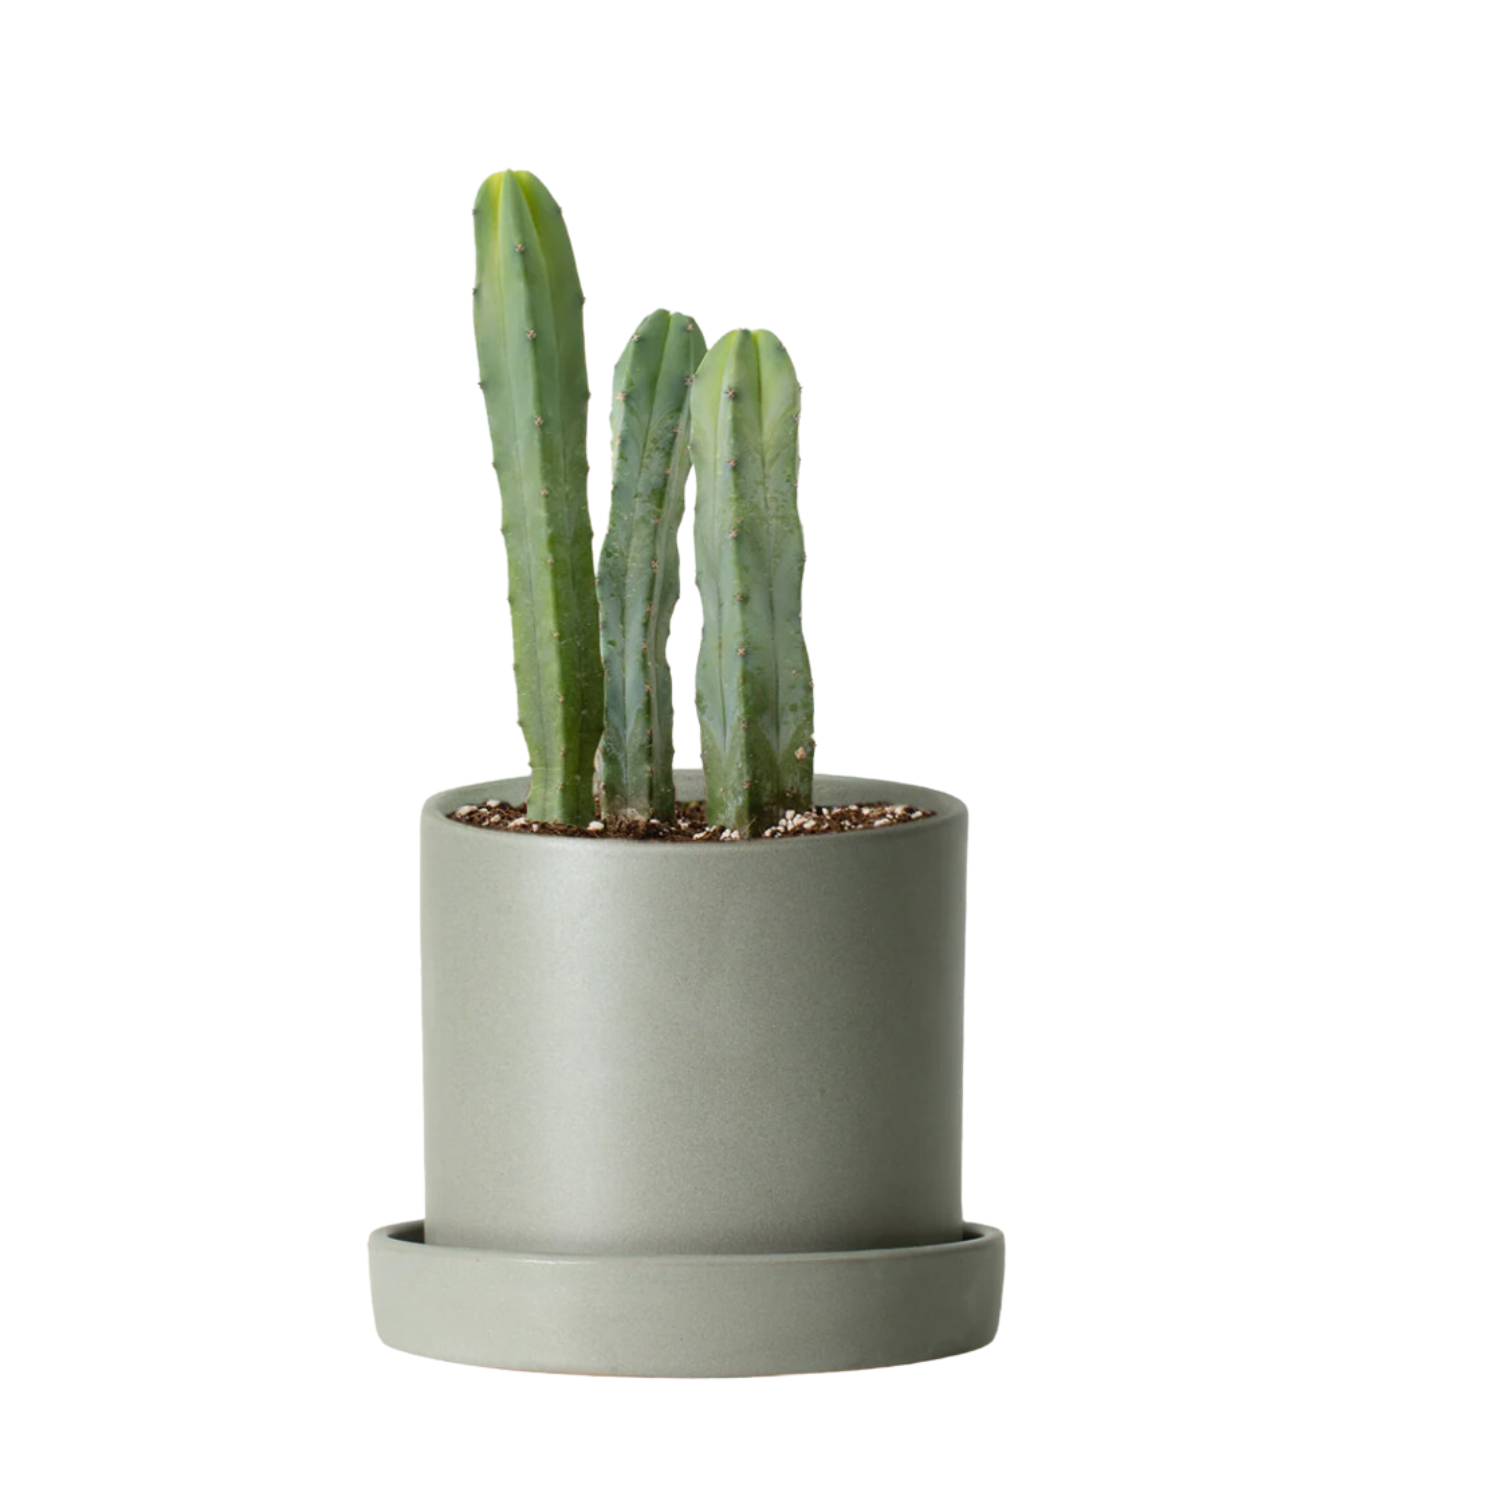 Live Cactus in Pot